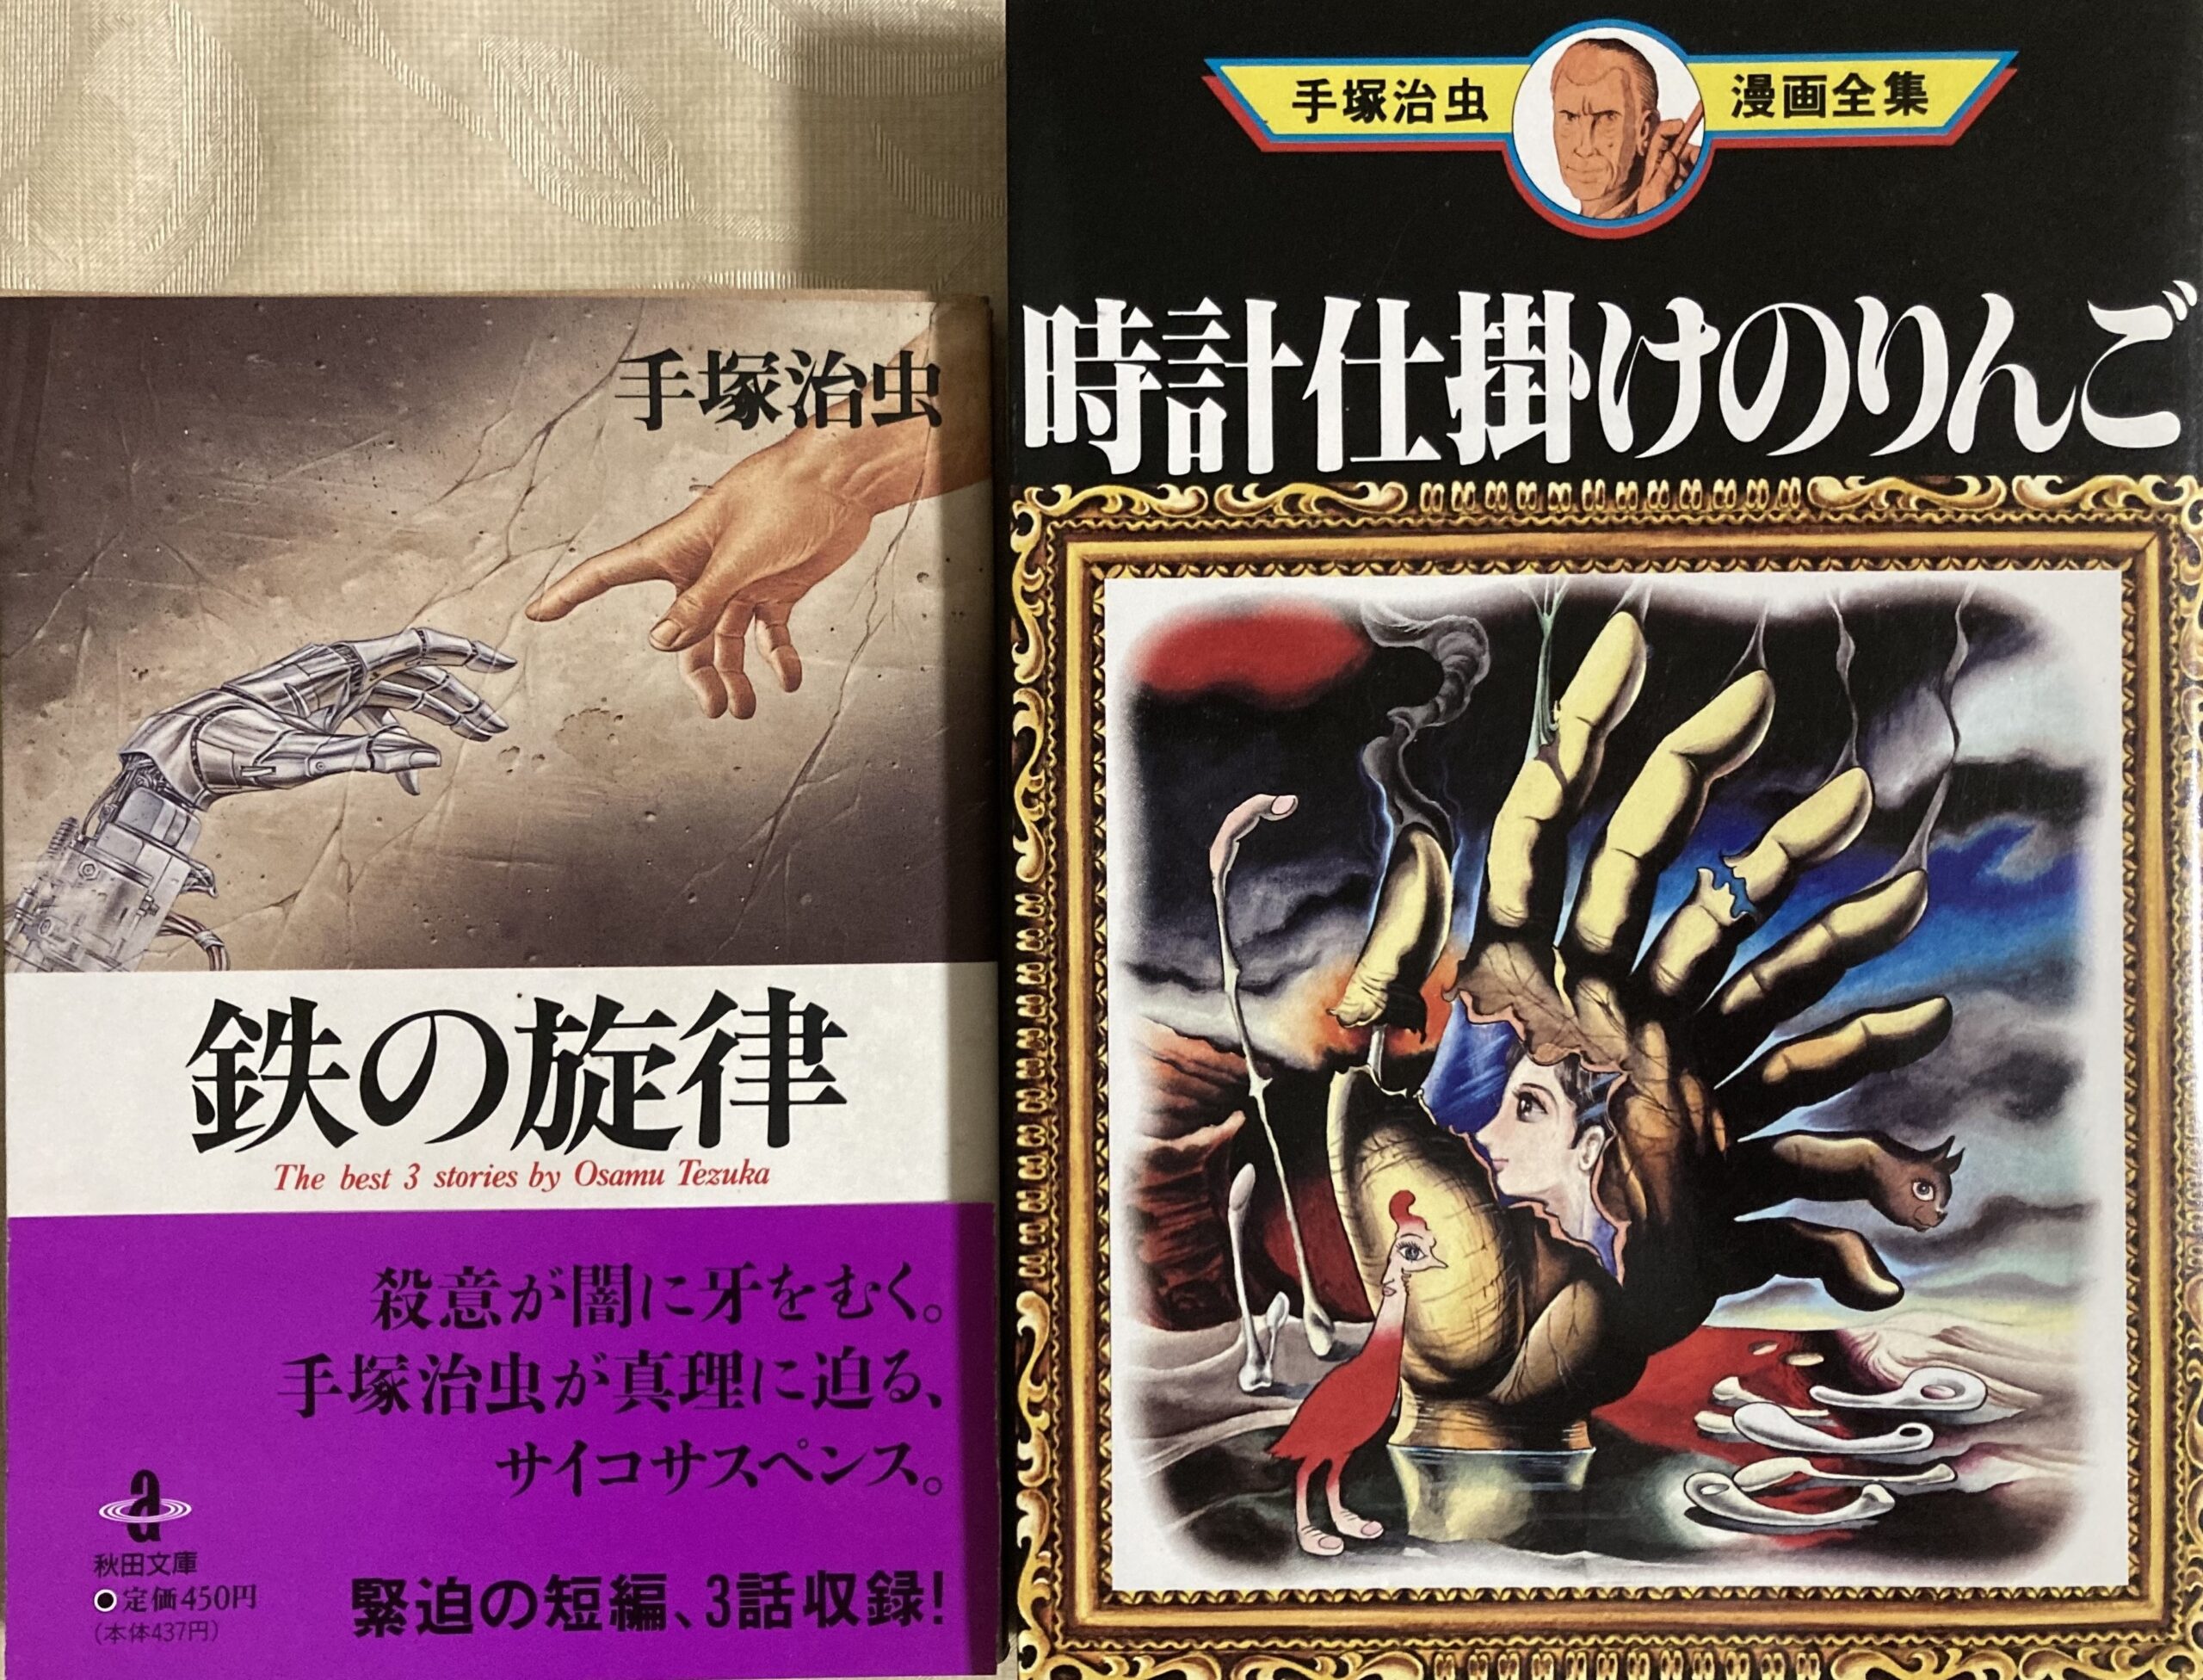 「イエロー・ダスト」と「悪魔の開幕」が収録された手塚治虫漫画全集と角川文庫の表紙の写真